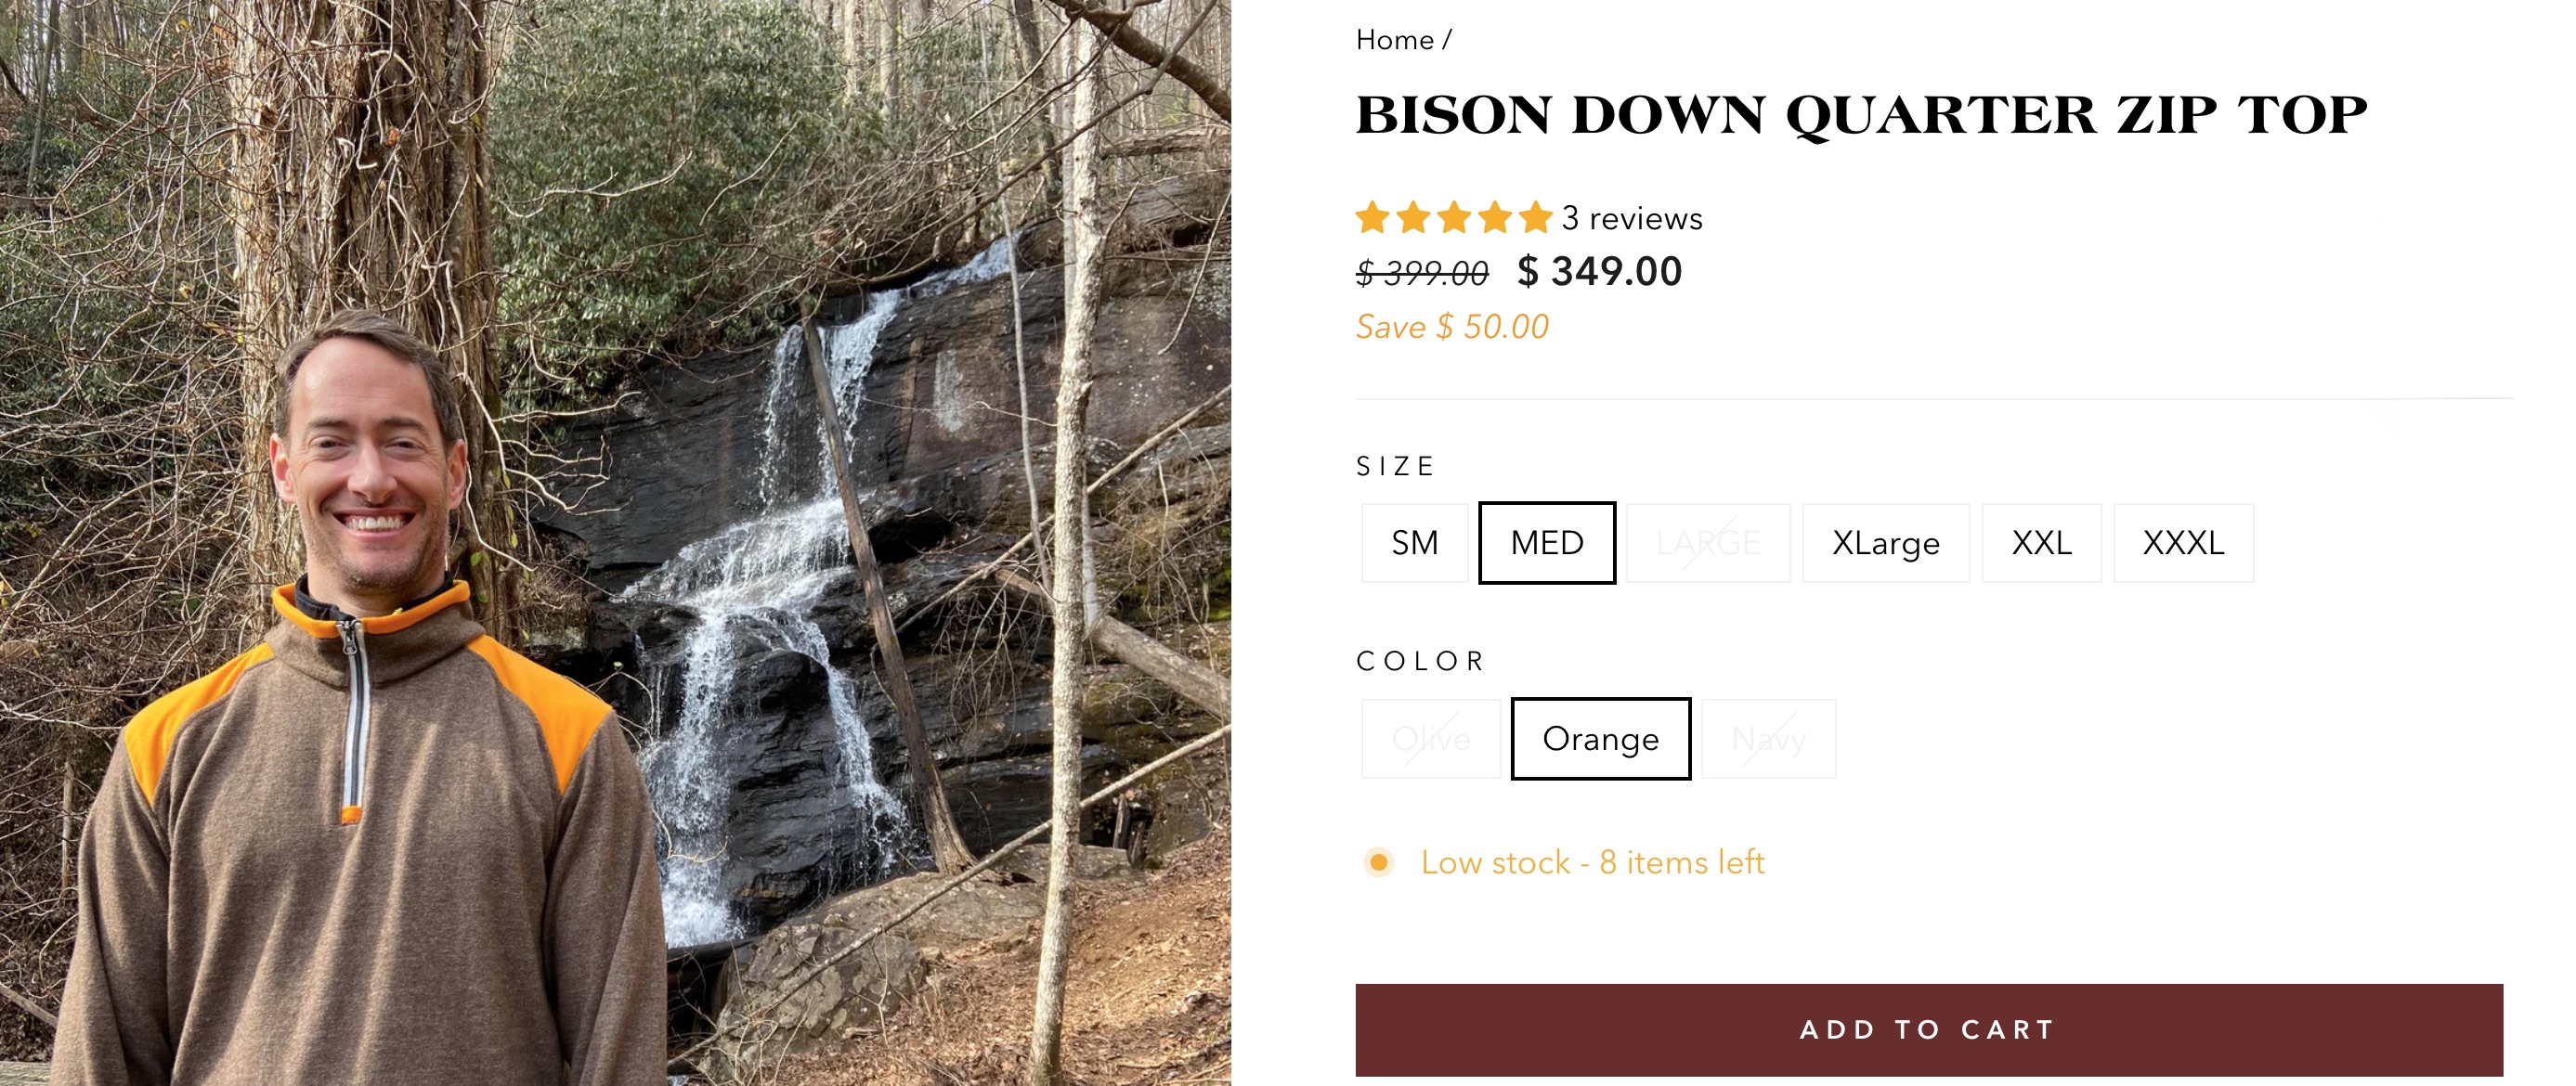 bison-down-quarter-zip-top.jpg